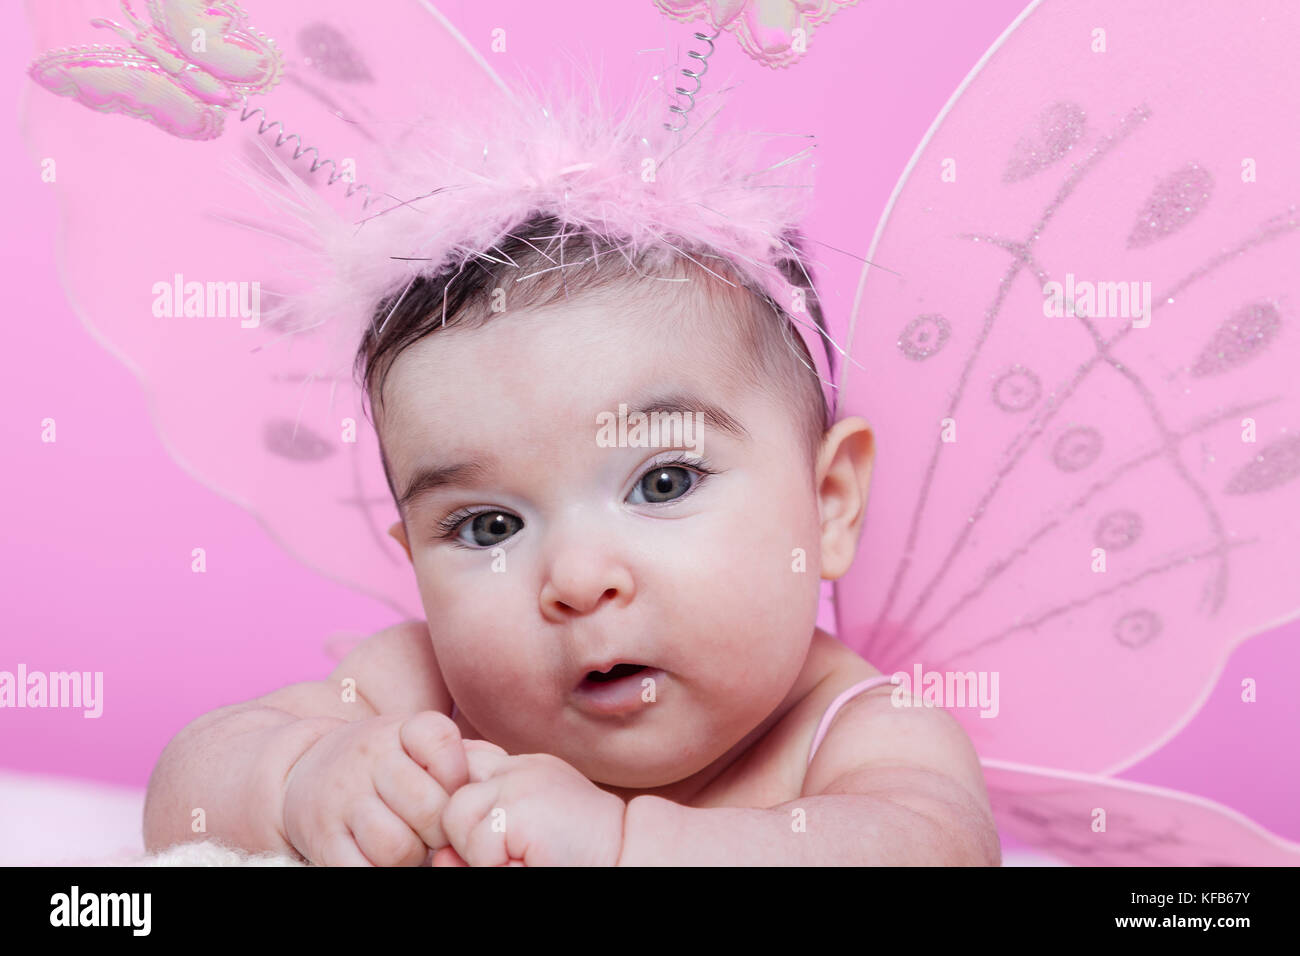 Mignon, joli, heureuse, chubby et smiling baby girl portrait, avec les ailes de papillon rose et serre-tête avec des antennes comme les papillons. 4 mois Banque D'Images